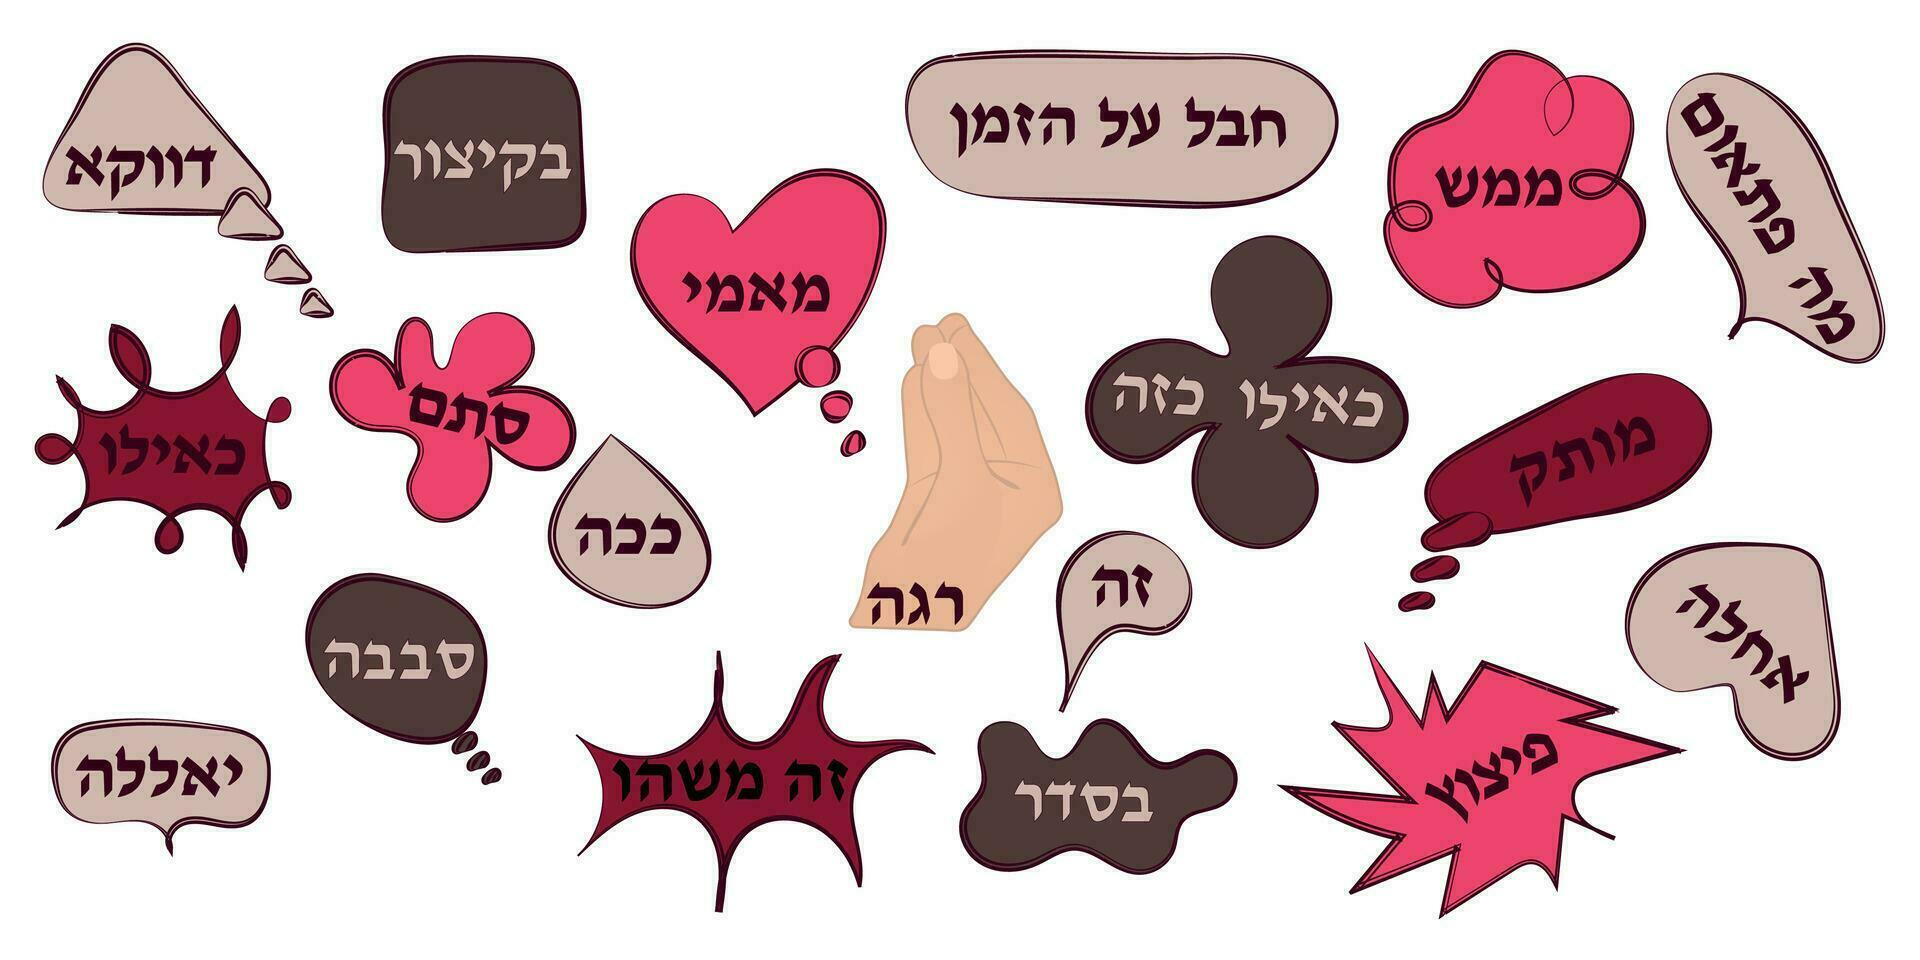 uma conjunto do adesivos com popular hebraico palavras espere, OK, como, esse, vetor